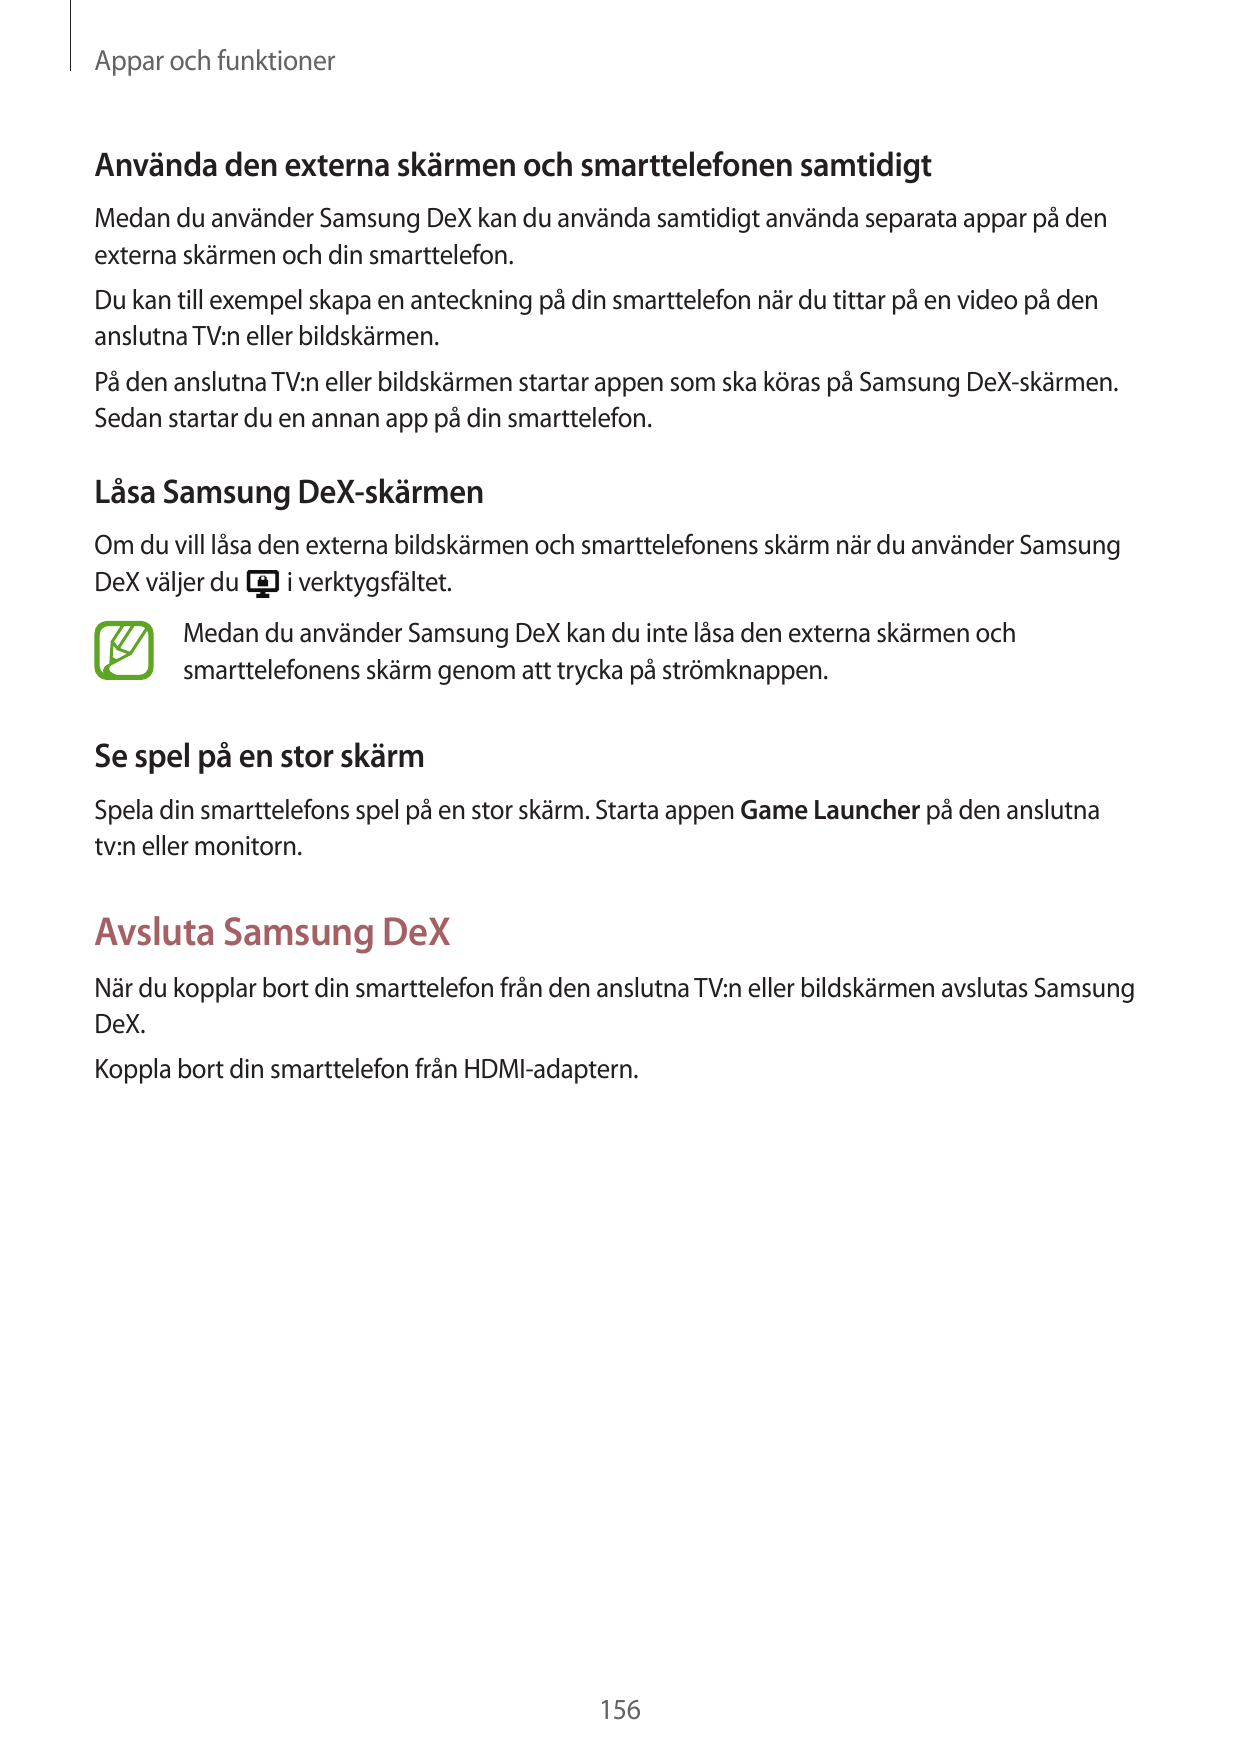 Appar och funktionerAnvända den externa skärmen och smarttelefonen samtidigtMedan du använder Samsung DeX kan du använda samtidi